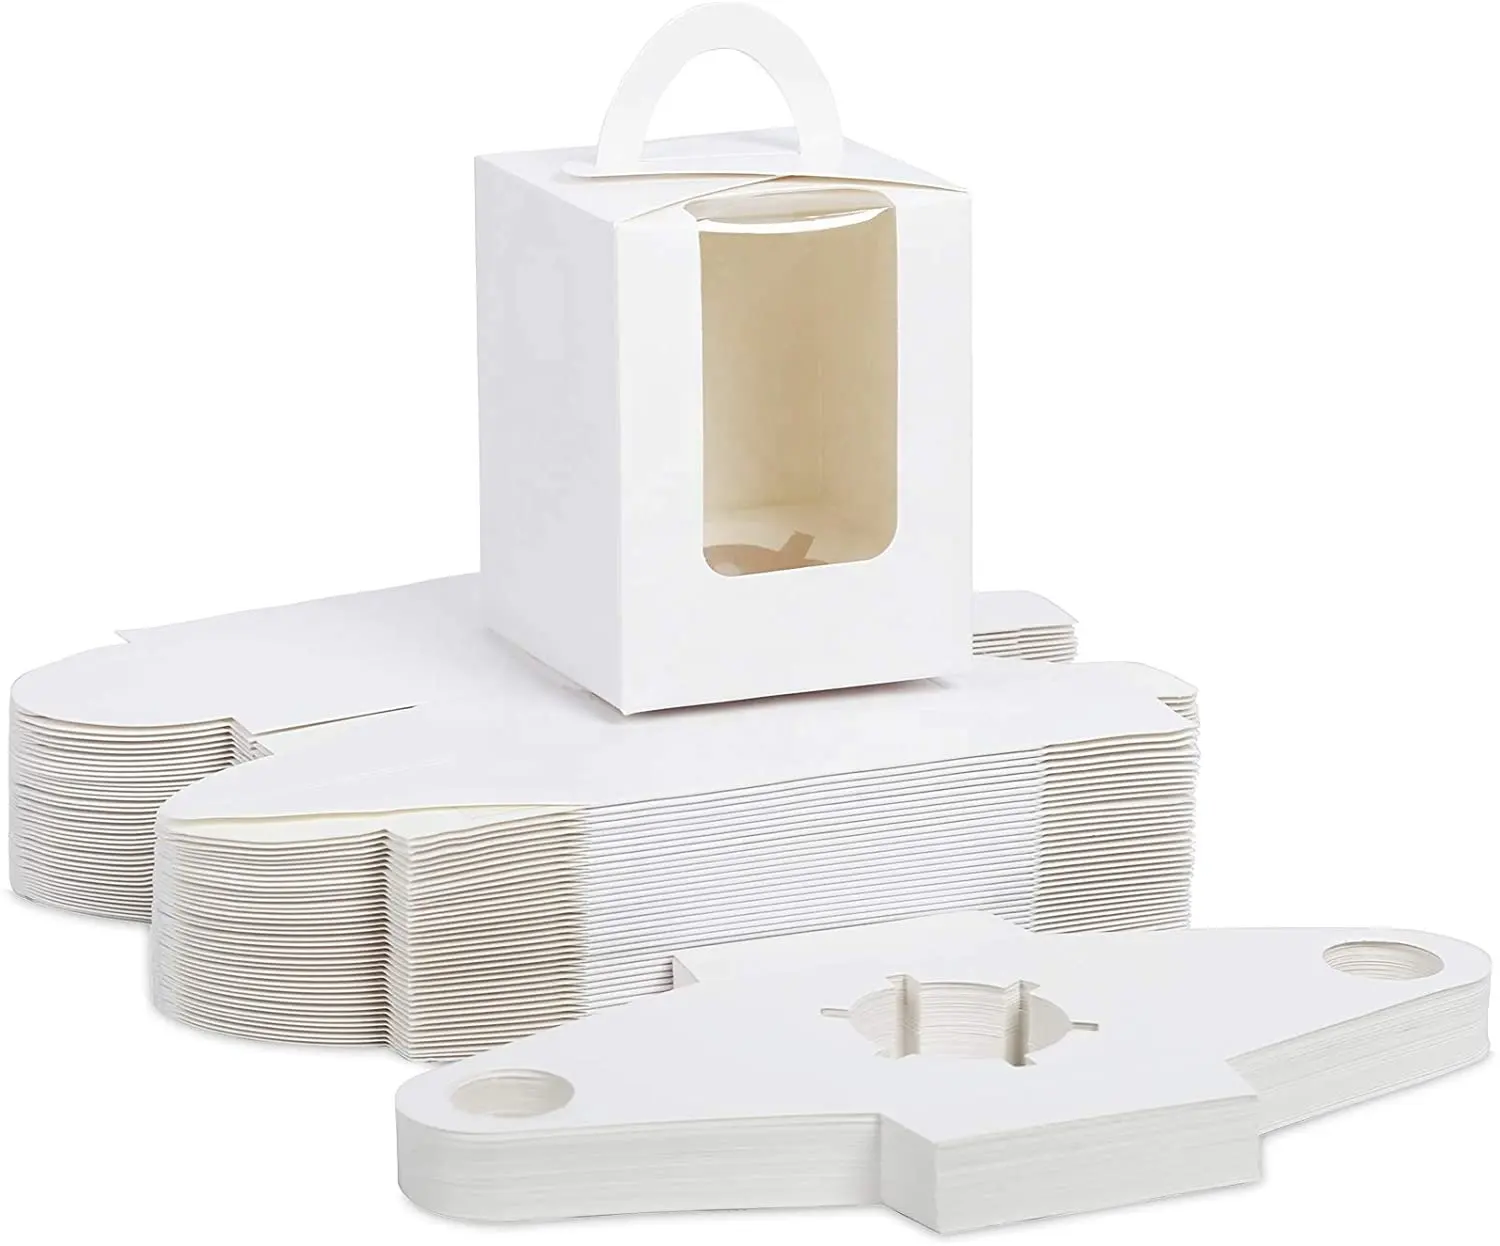 사용자 정의 고품질 화이트 브라운 단일 컵 케이크 캐리어 상자 창 작은 케이크 상자 빵집 포장 포장